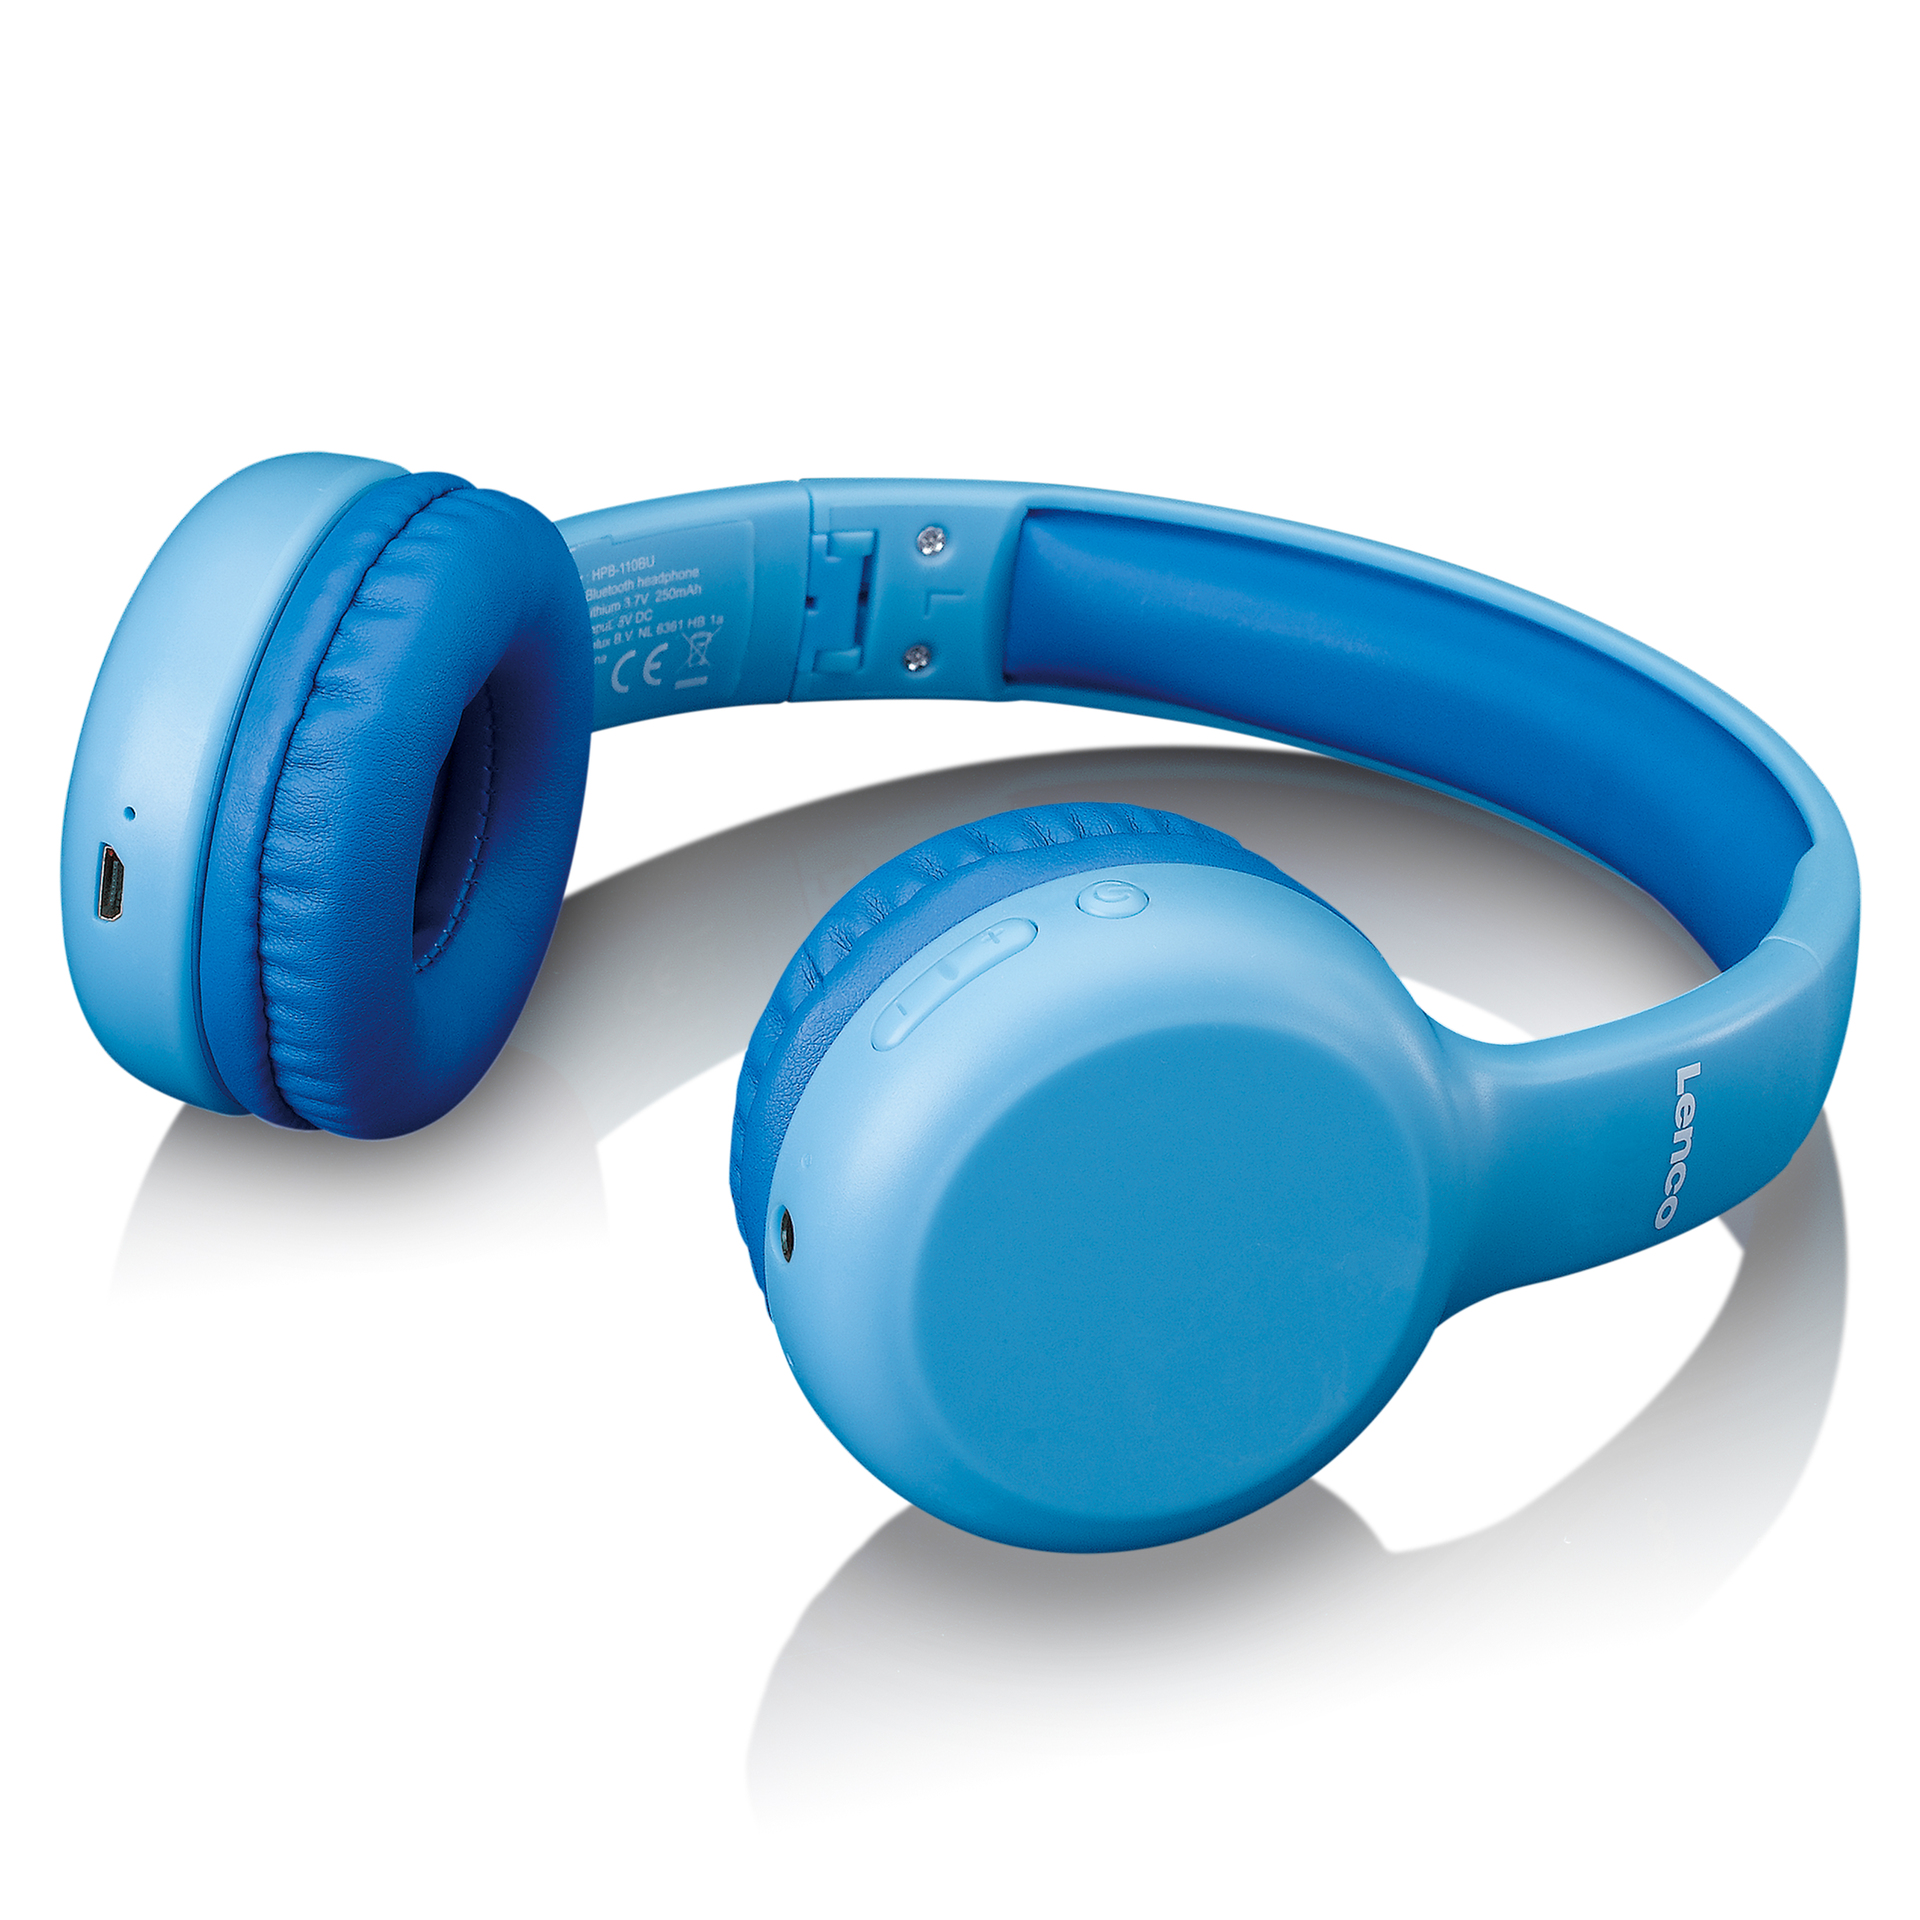 Entdecke Musik neu mit den blauen LENCO Kids BT Kopfhörern inklusive  Stickern - der perfekte Soundtrack für junge Abenteurer! | aetka Shop